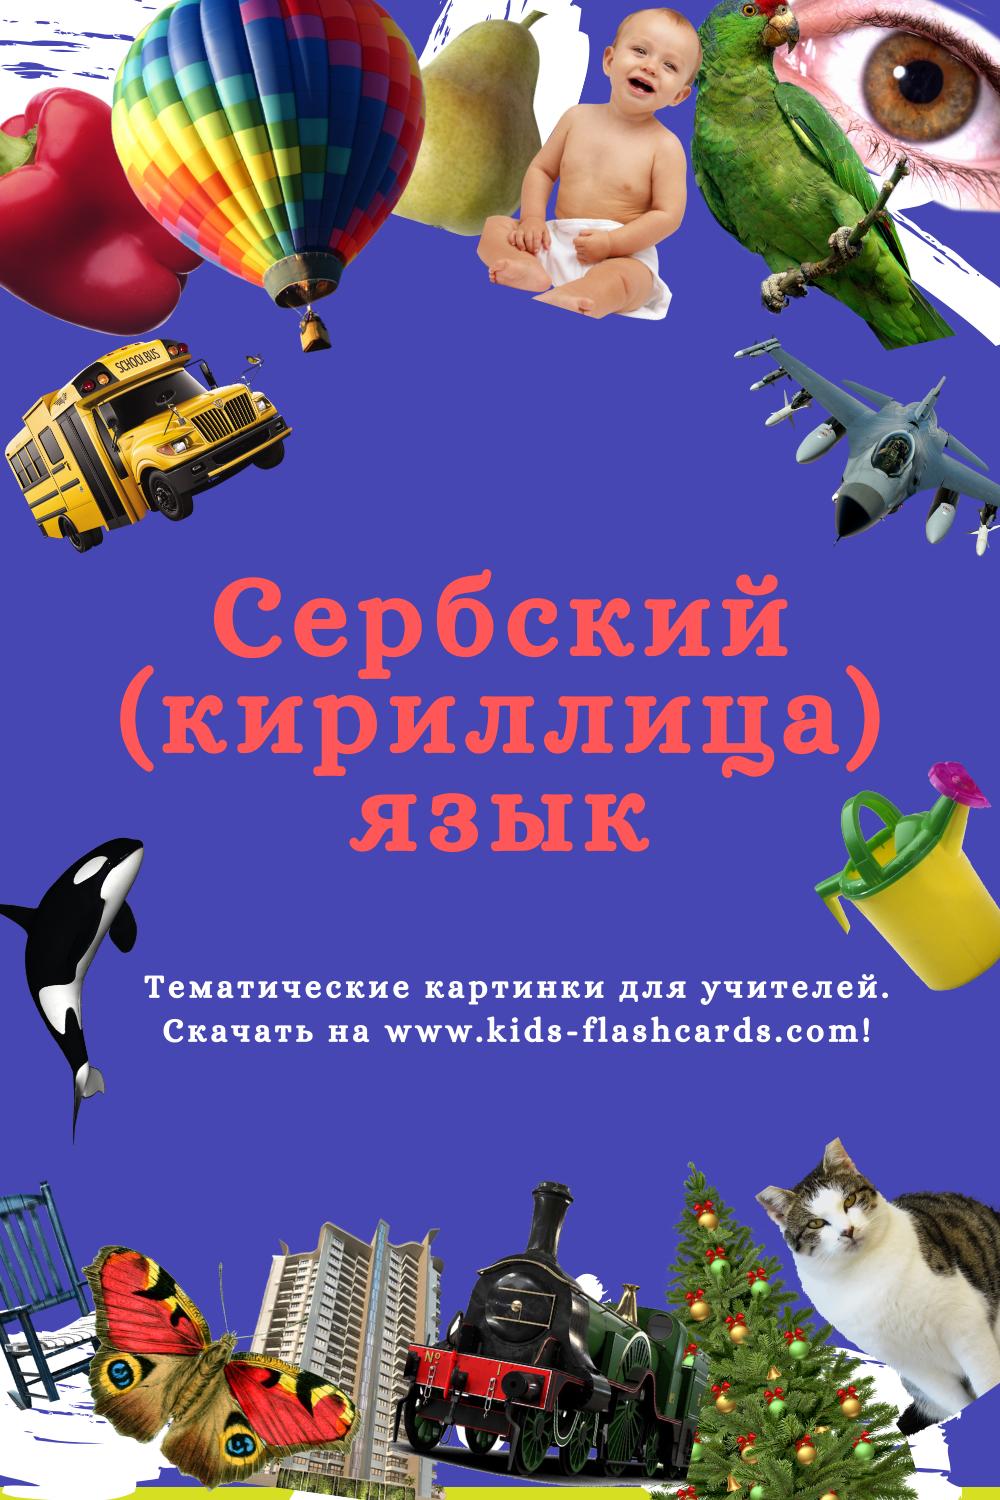 Сербский(кириллица) язык - распечатки для детей